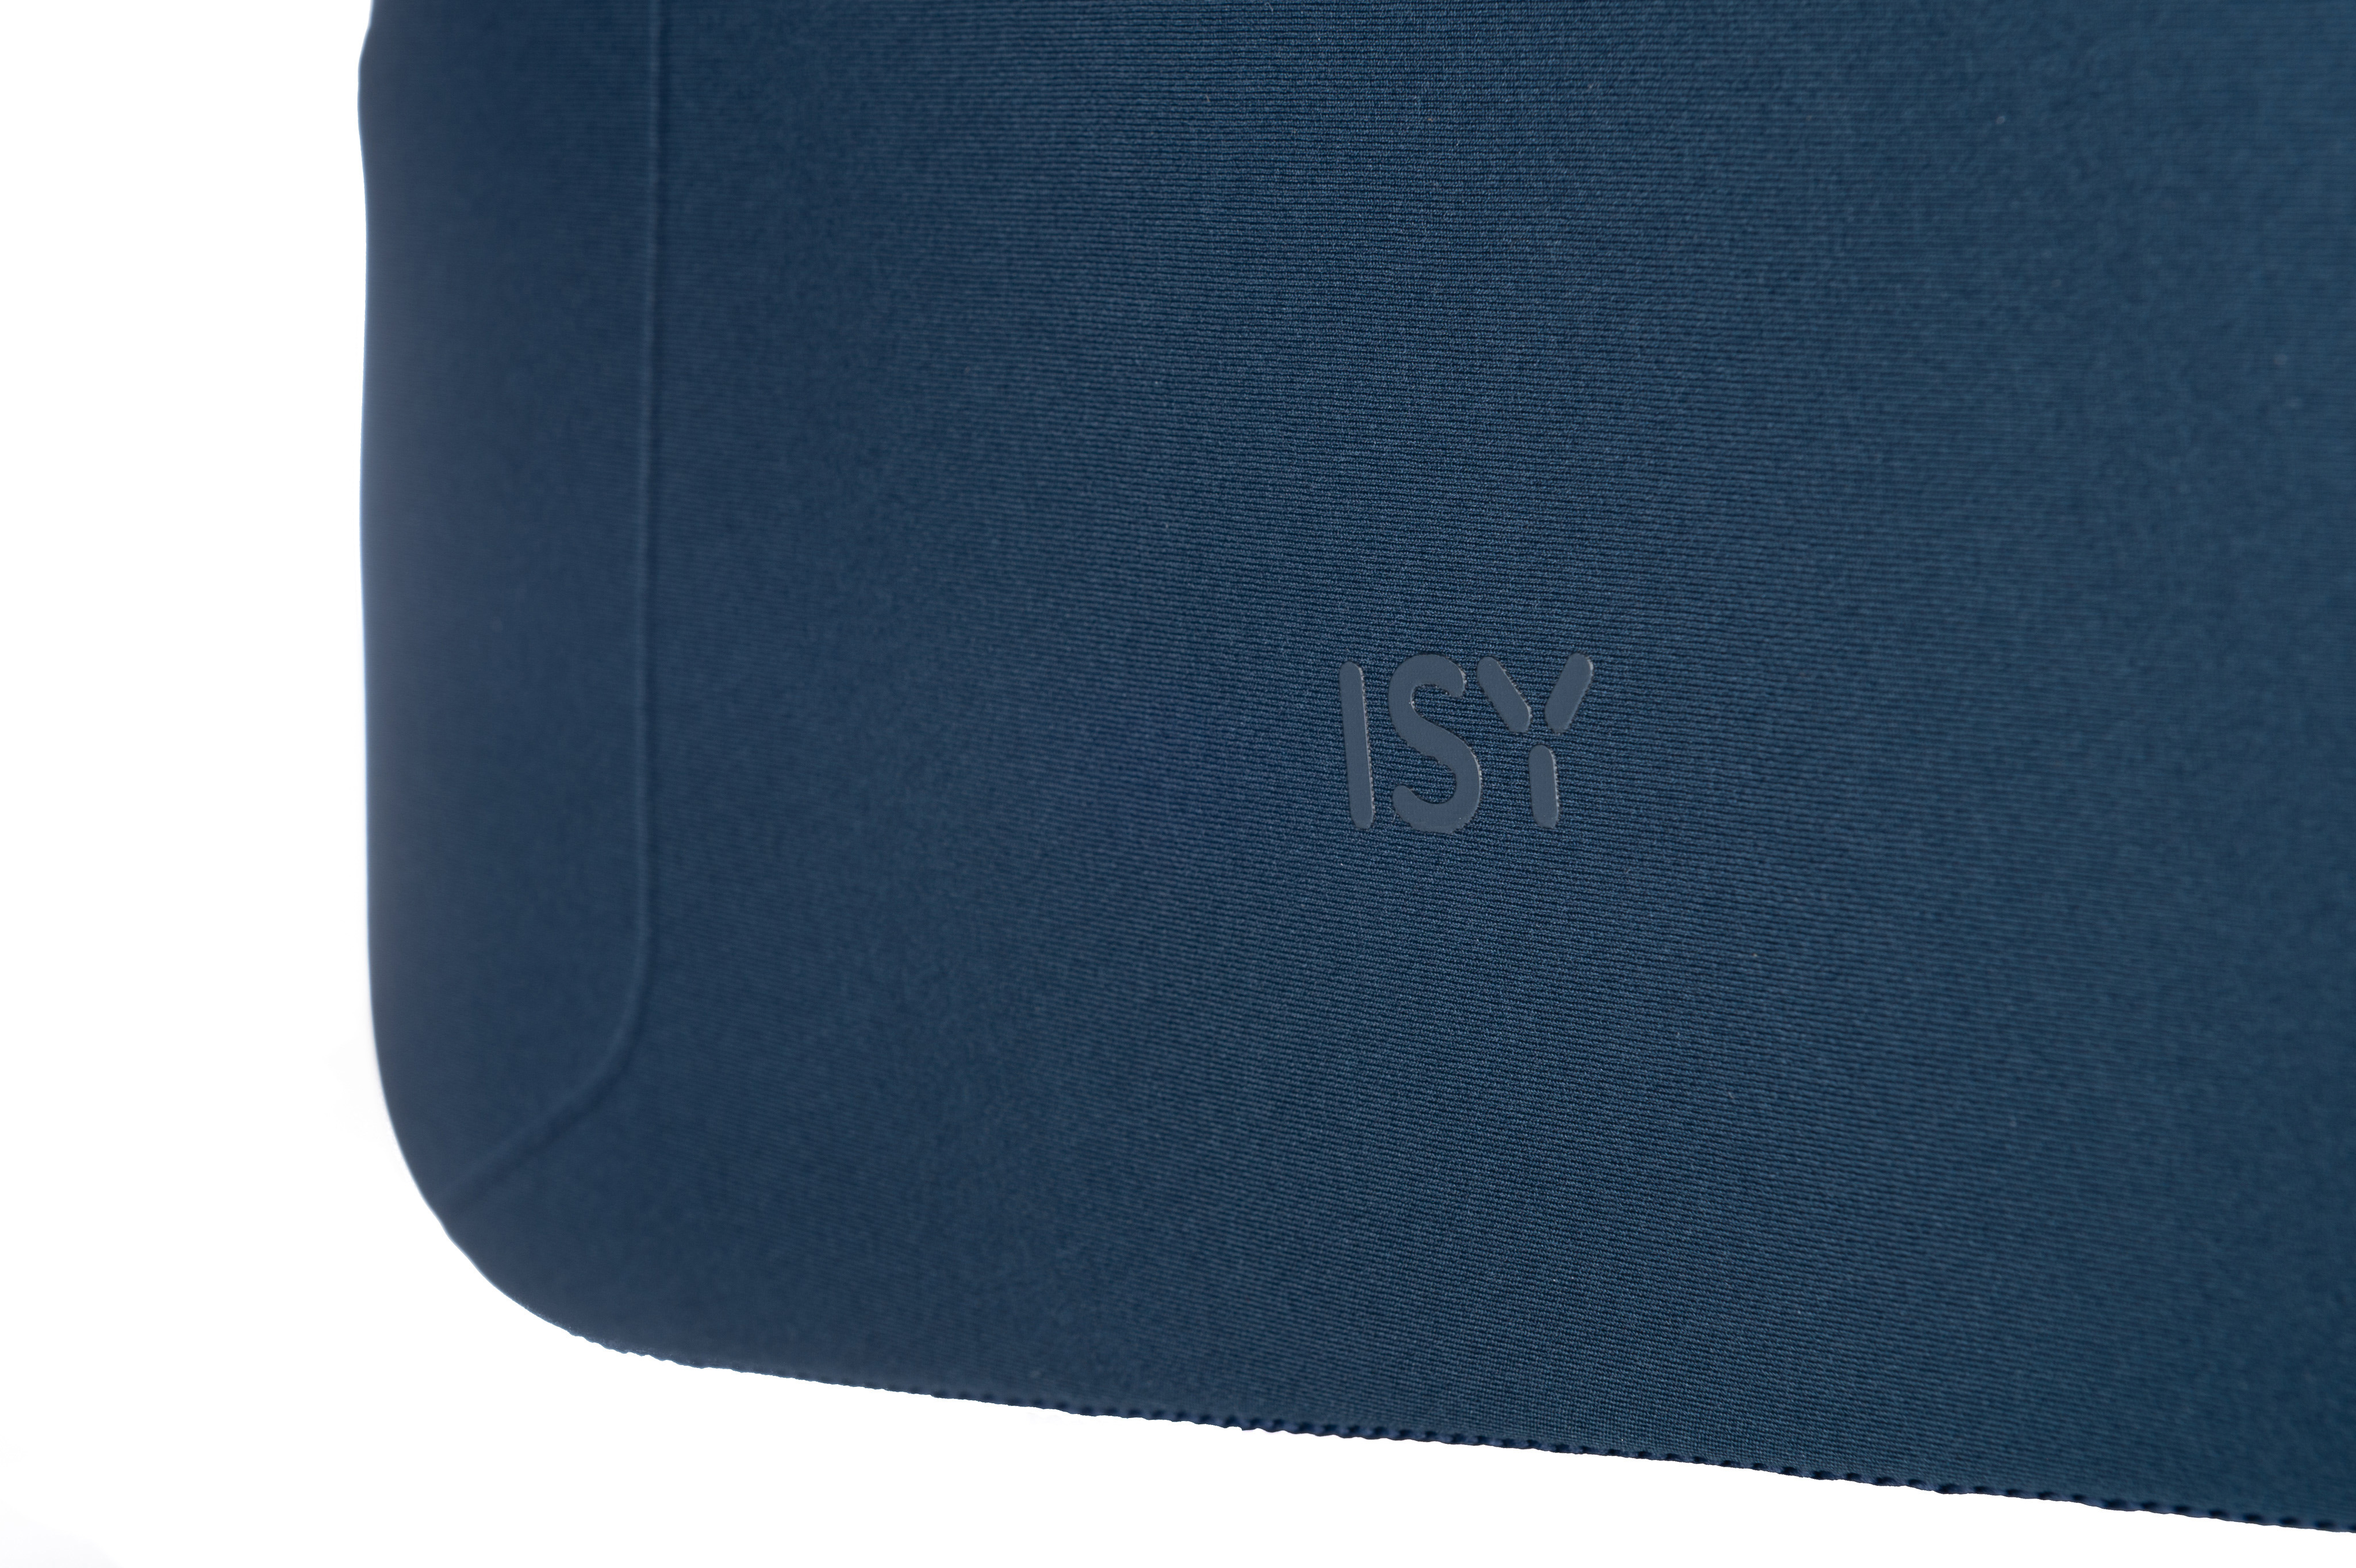 ISY INB-1112 Notebooktasche für Polyester, 100% Sleeve Blau Universal